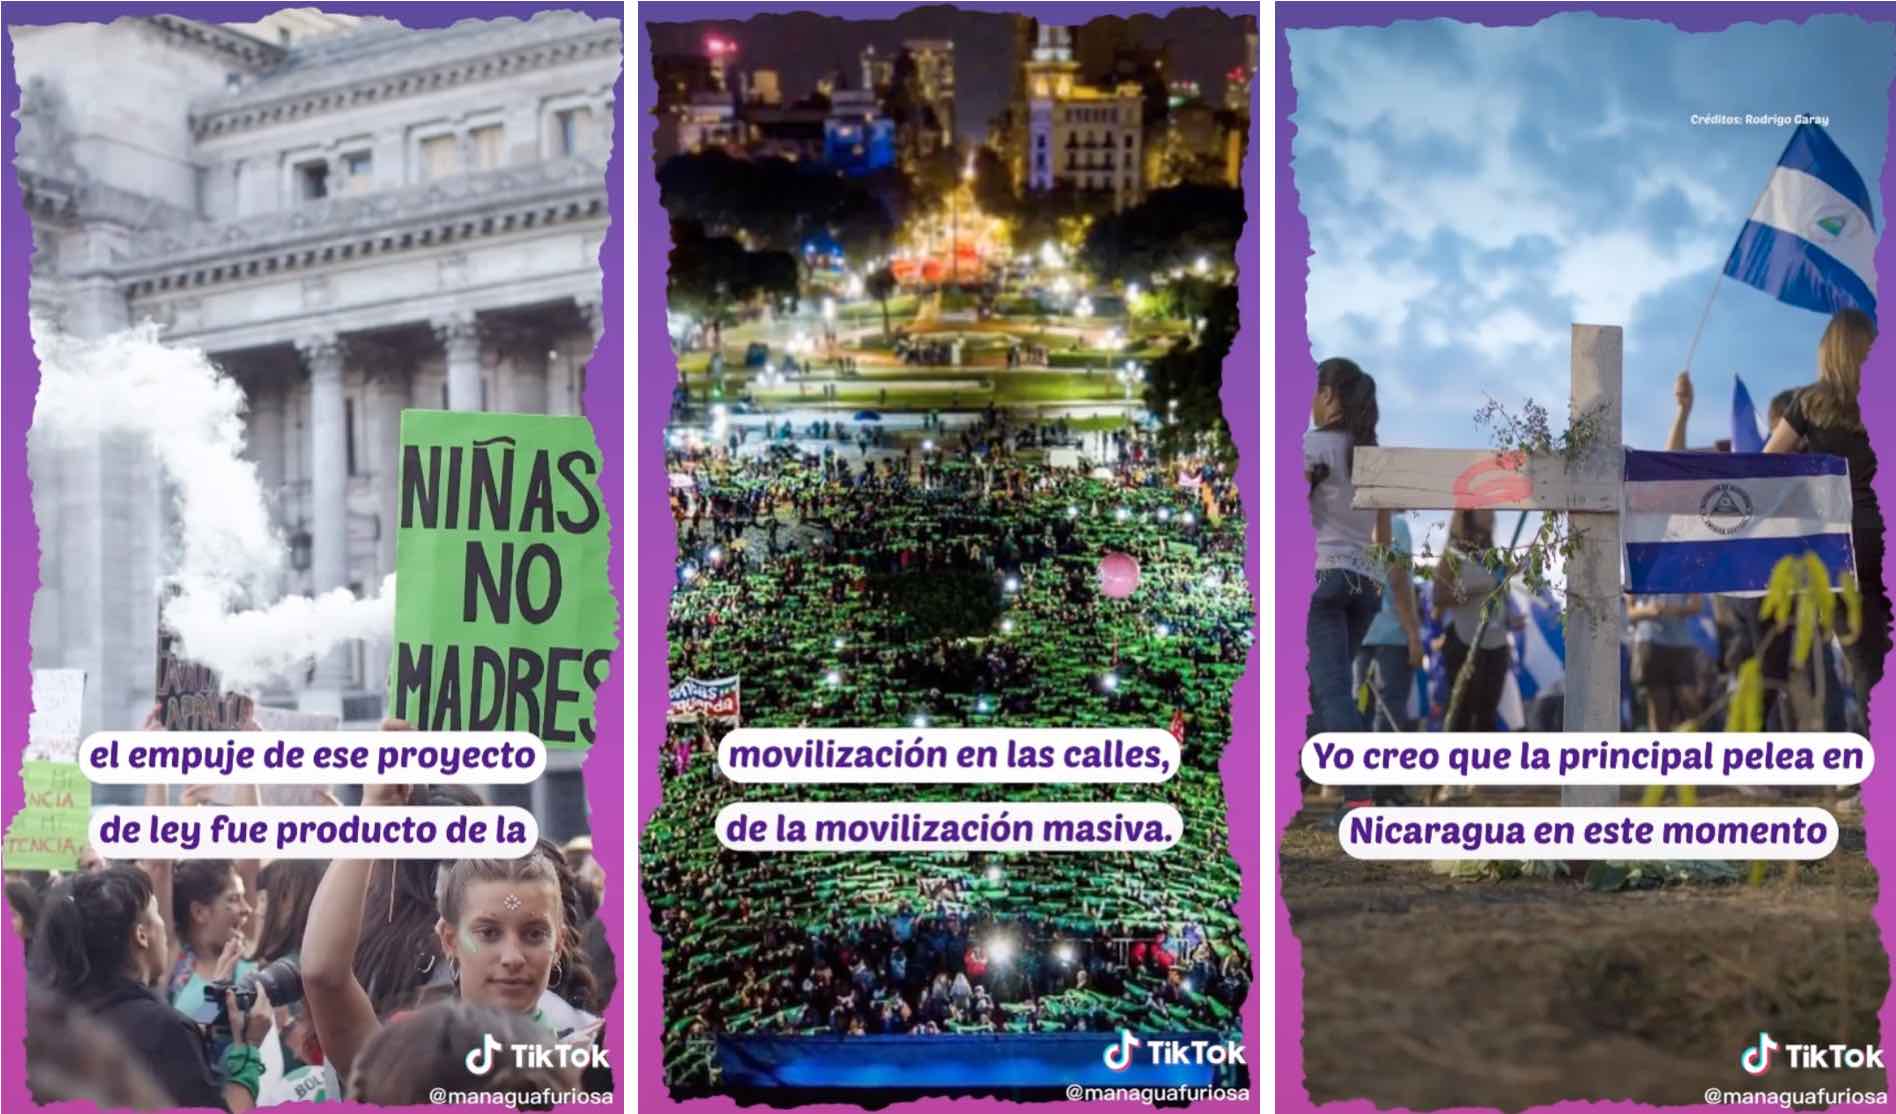 TikTok posts from Nicaraguan news site 'Managua Furiosa'. 